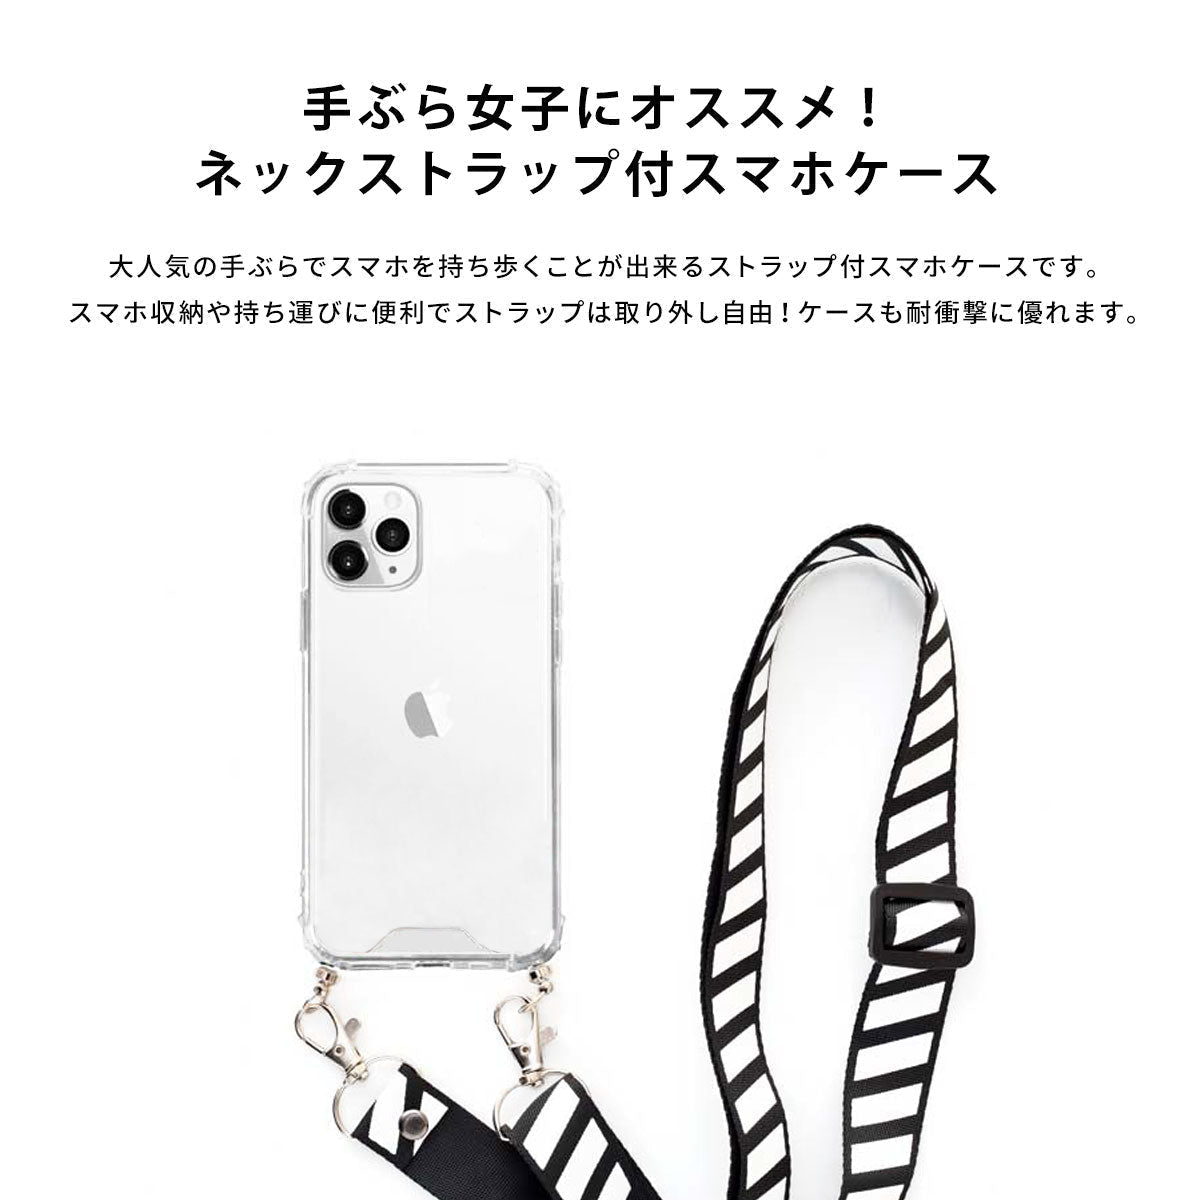 【スマホショルダー】ネックストラップ スマホケース  iPhone13 iPone12 かわいい おしゃれ  ネックストラップ付き 野菜 名入れ